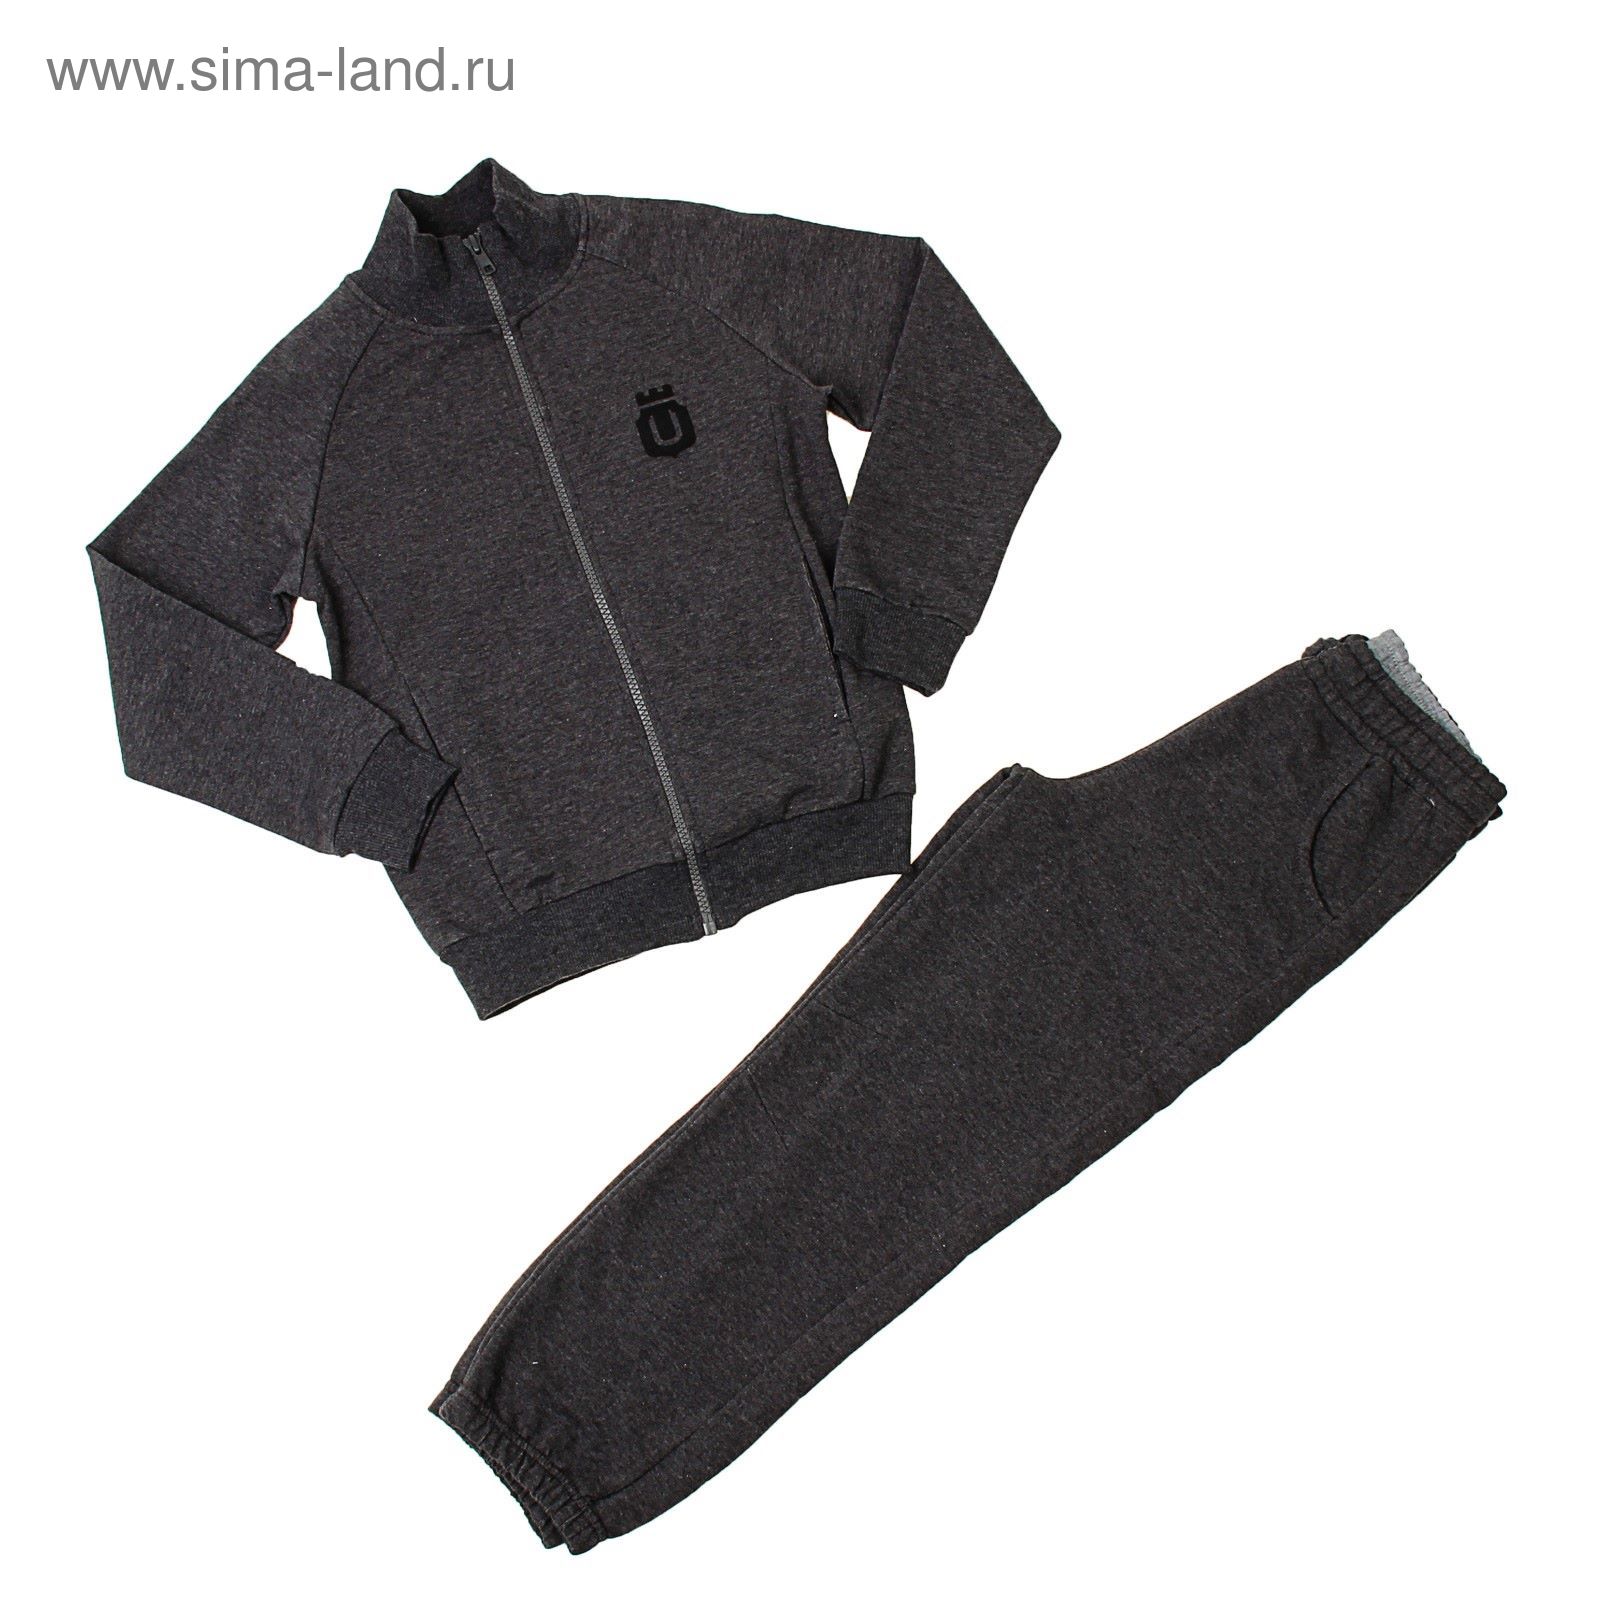 Комплект для мальчика (толстовка, брюки), рост 110-116 см, цвет графитовый меланж 182-М